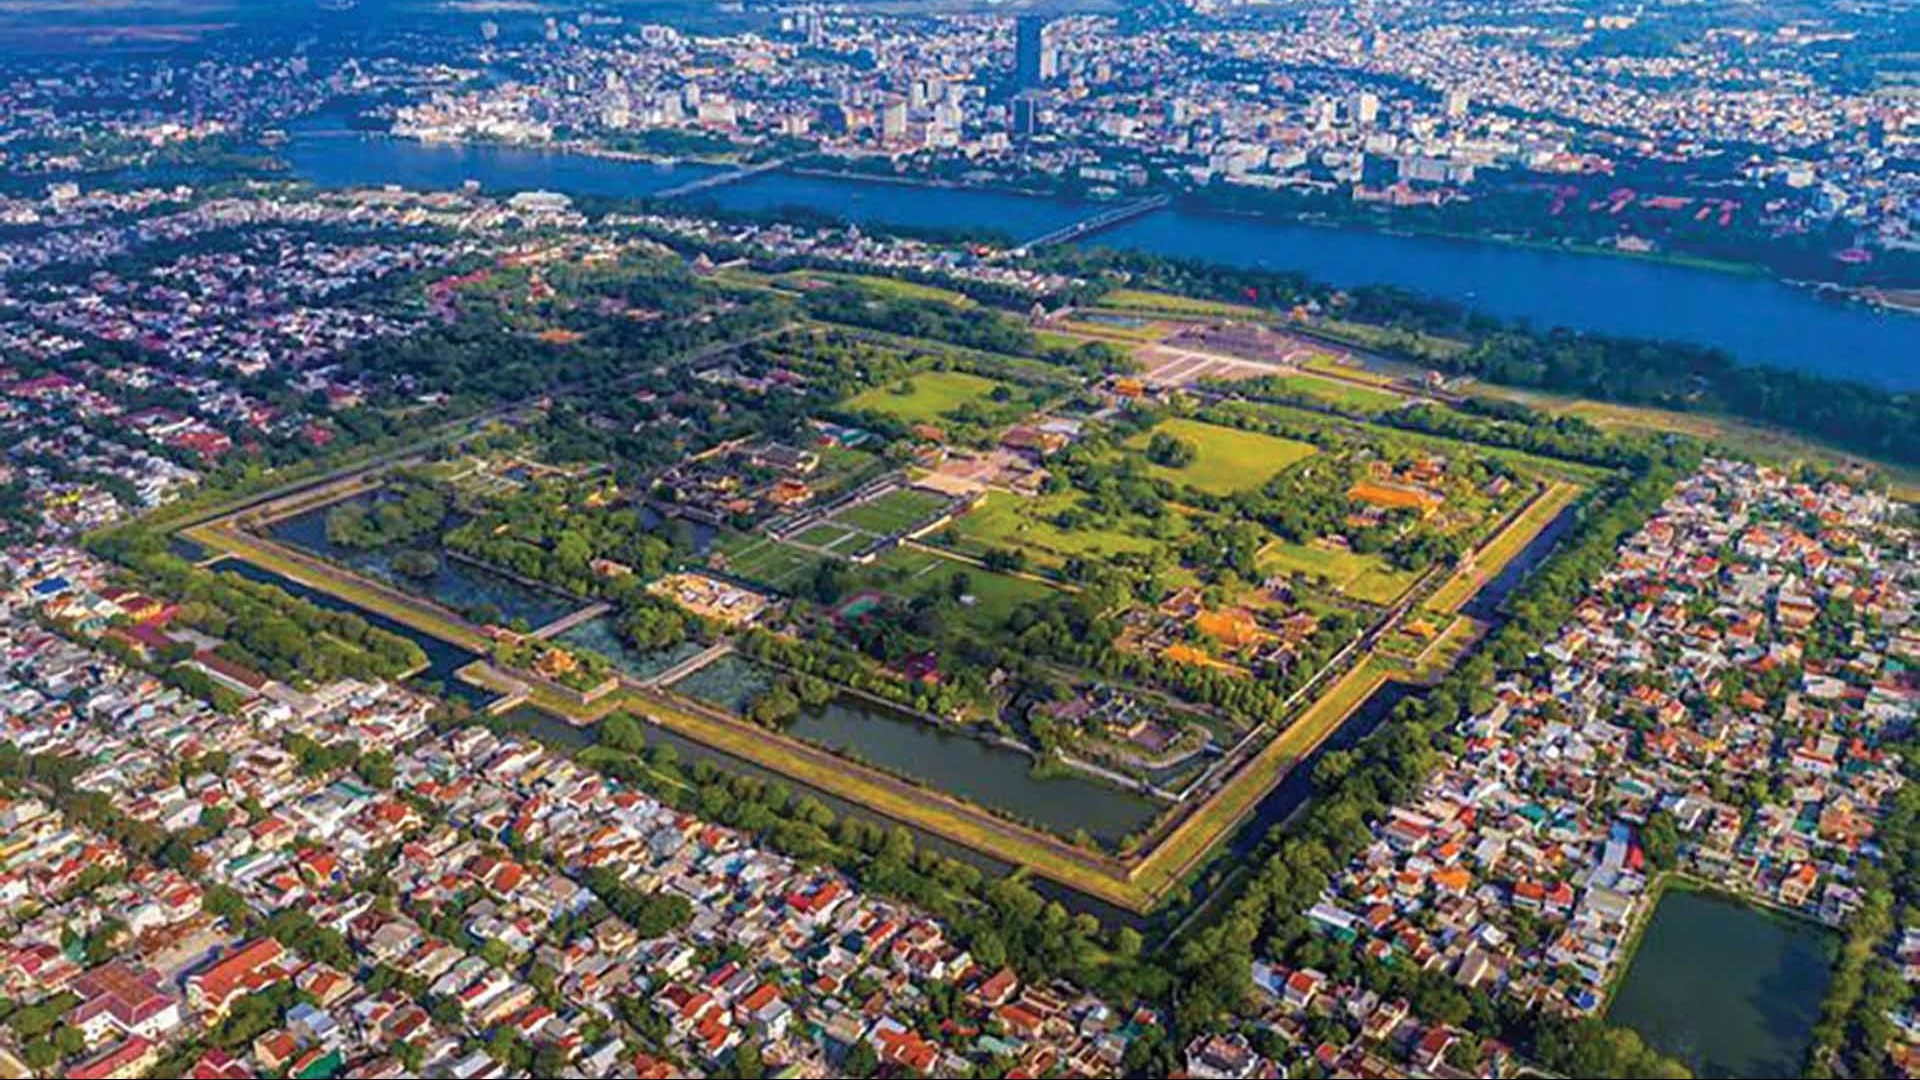 Thừa Thiên Huế: ‘Đất lành’ cho nhà đầu tư